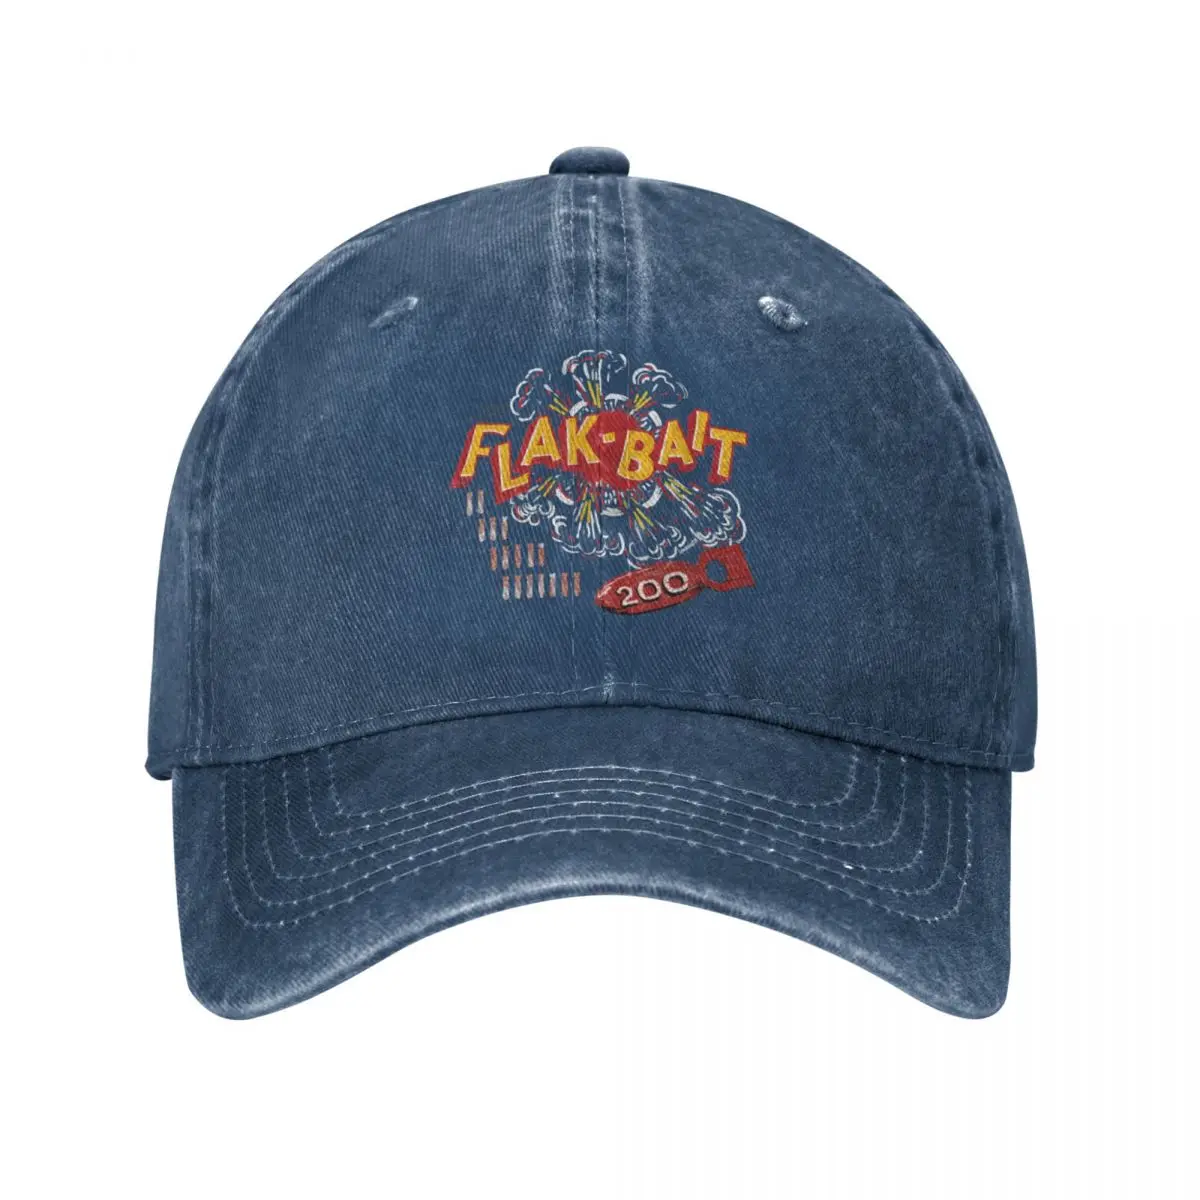 

Flak-Bait Nose Art Cap Cowboy Hat snapback cap fashion anime women hat Men's